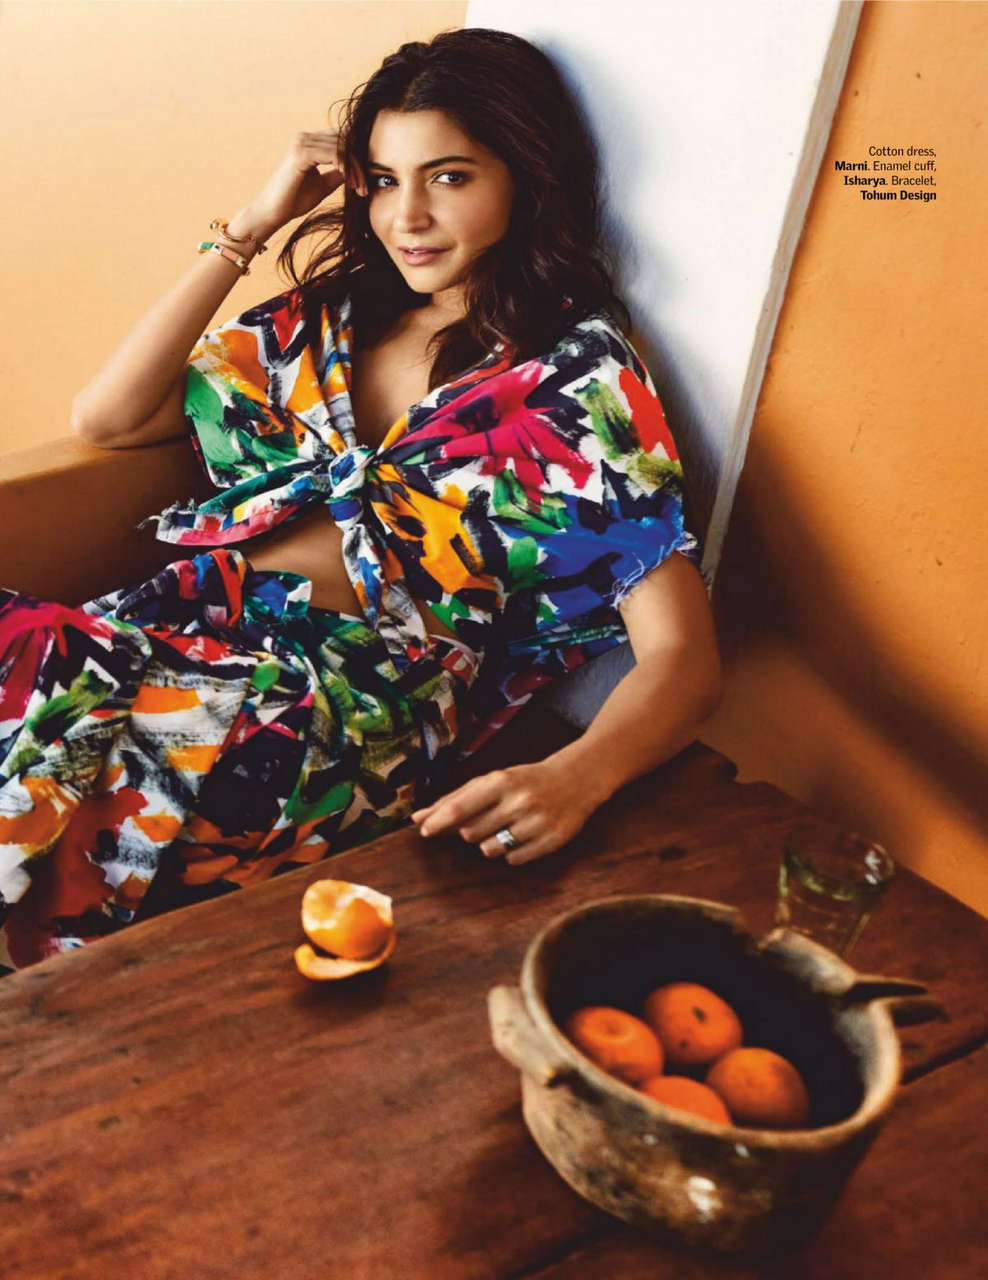 Anusha Sharma Vogue Magazine India July